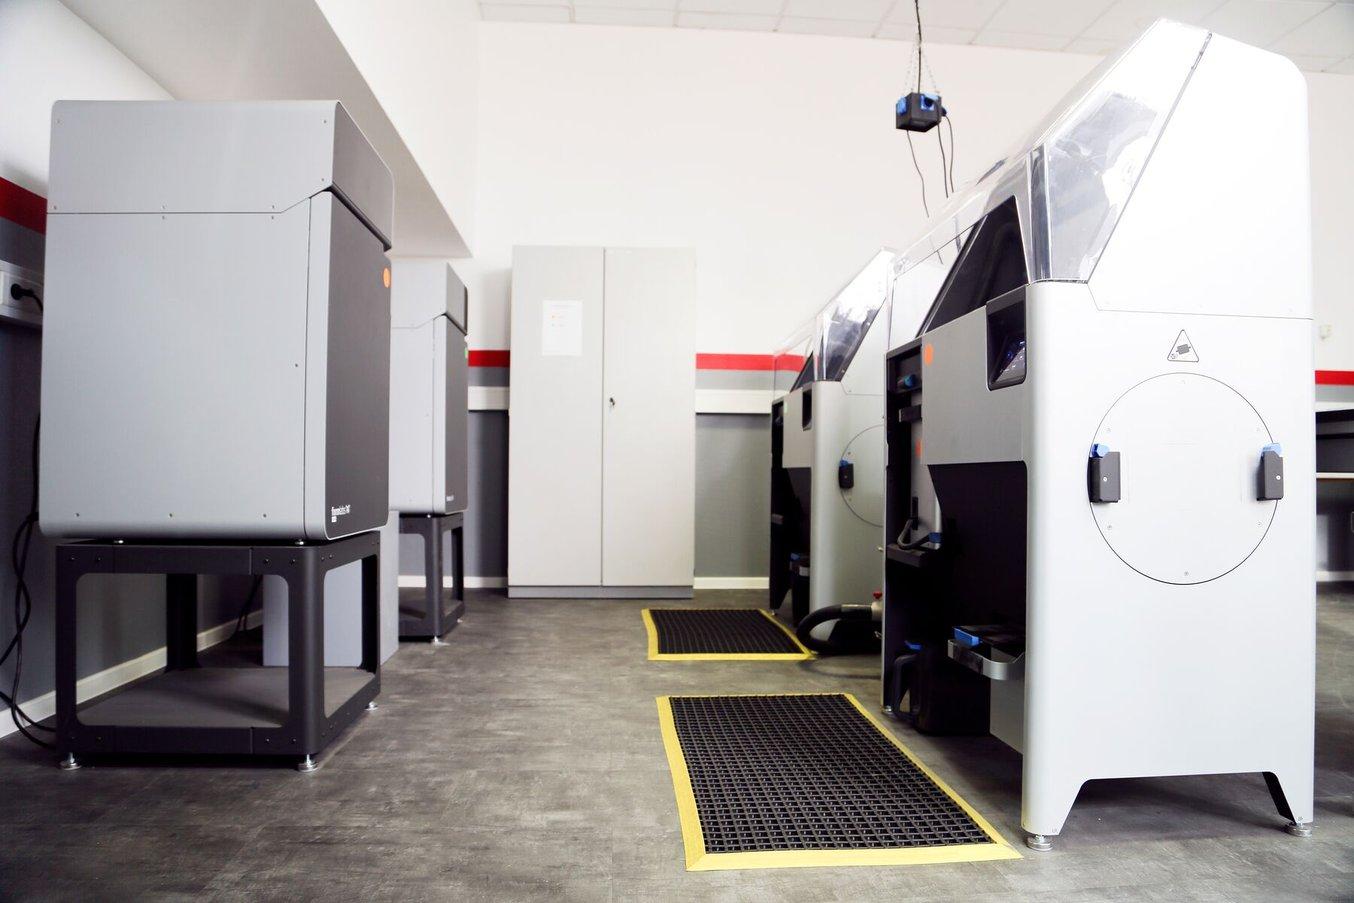 El taller de impresión 3D de Neumünster cuenta con diez impresoras 3D diferentes, entre las que se cuentan dos impresoras SLS de la serie Fuse.